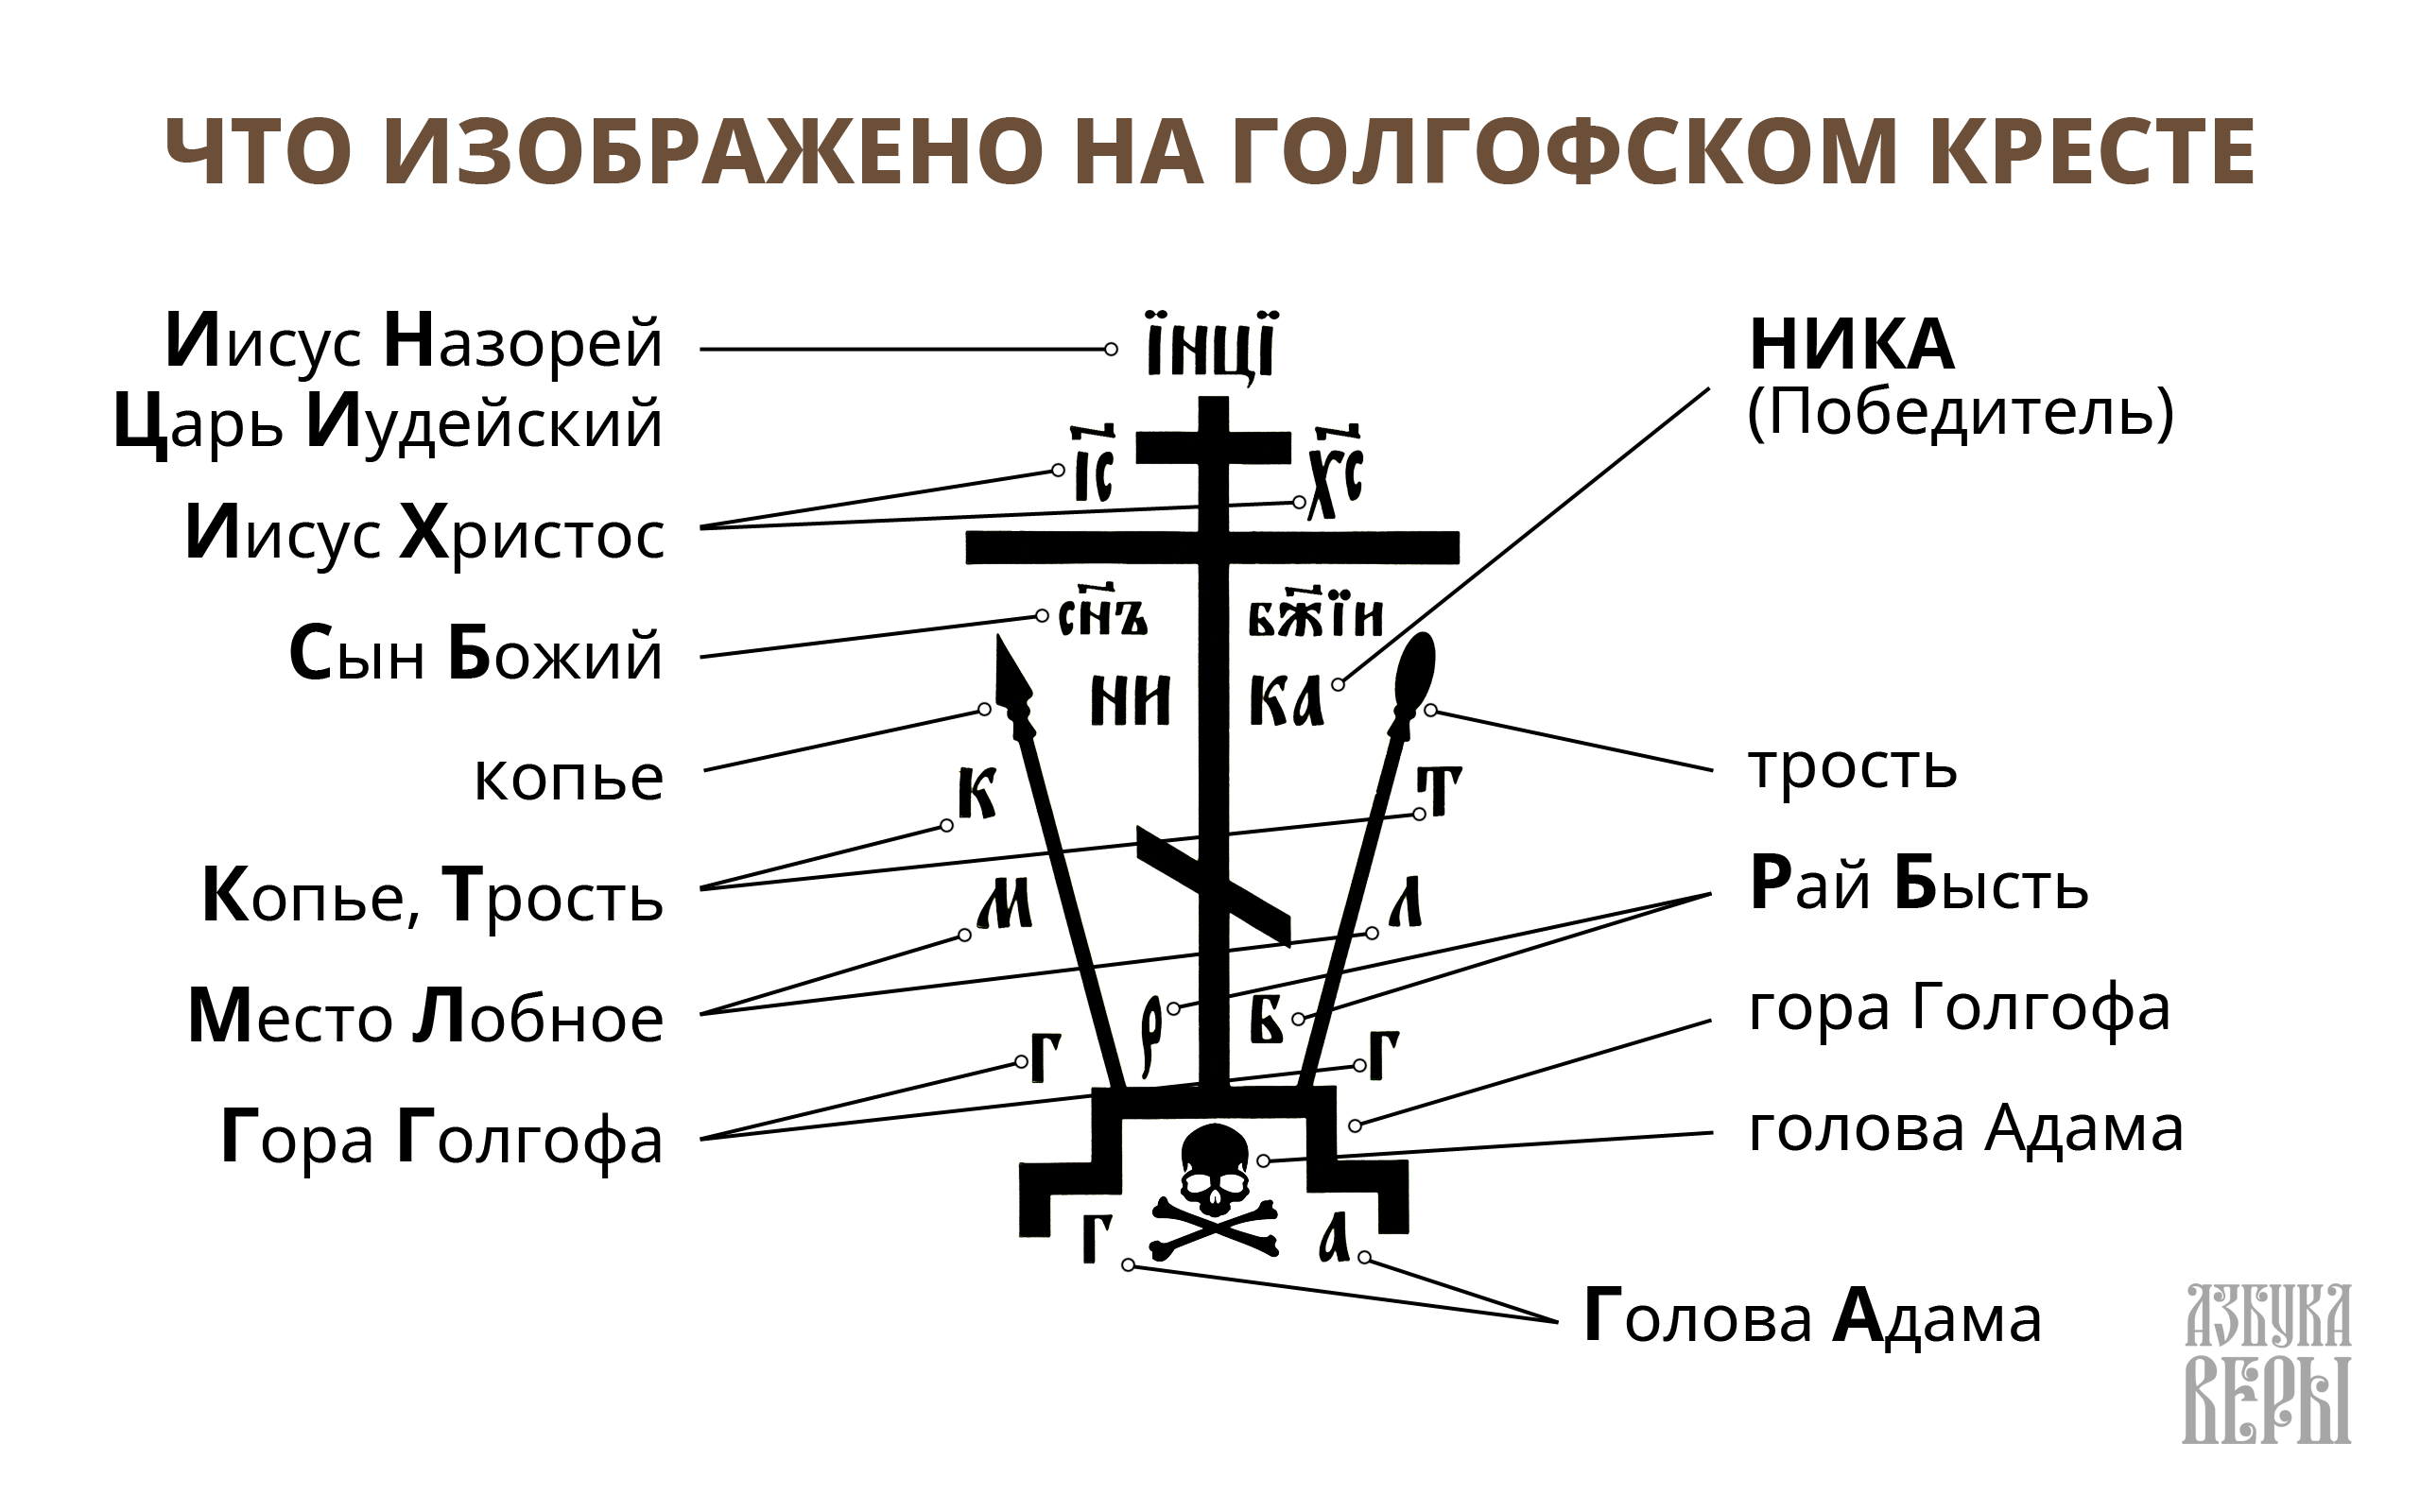 Надписи на православном кресте